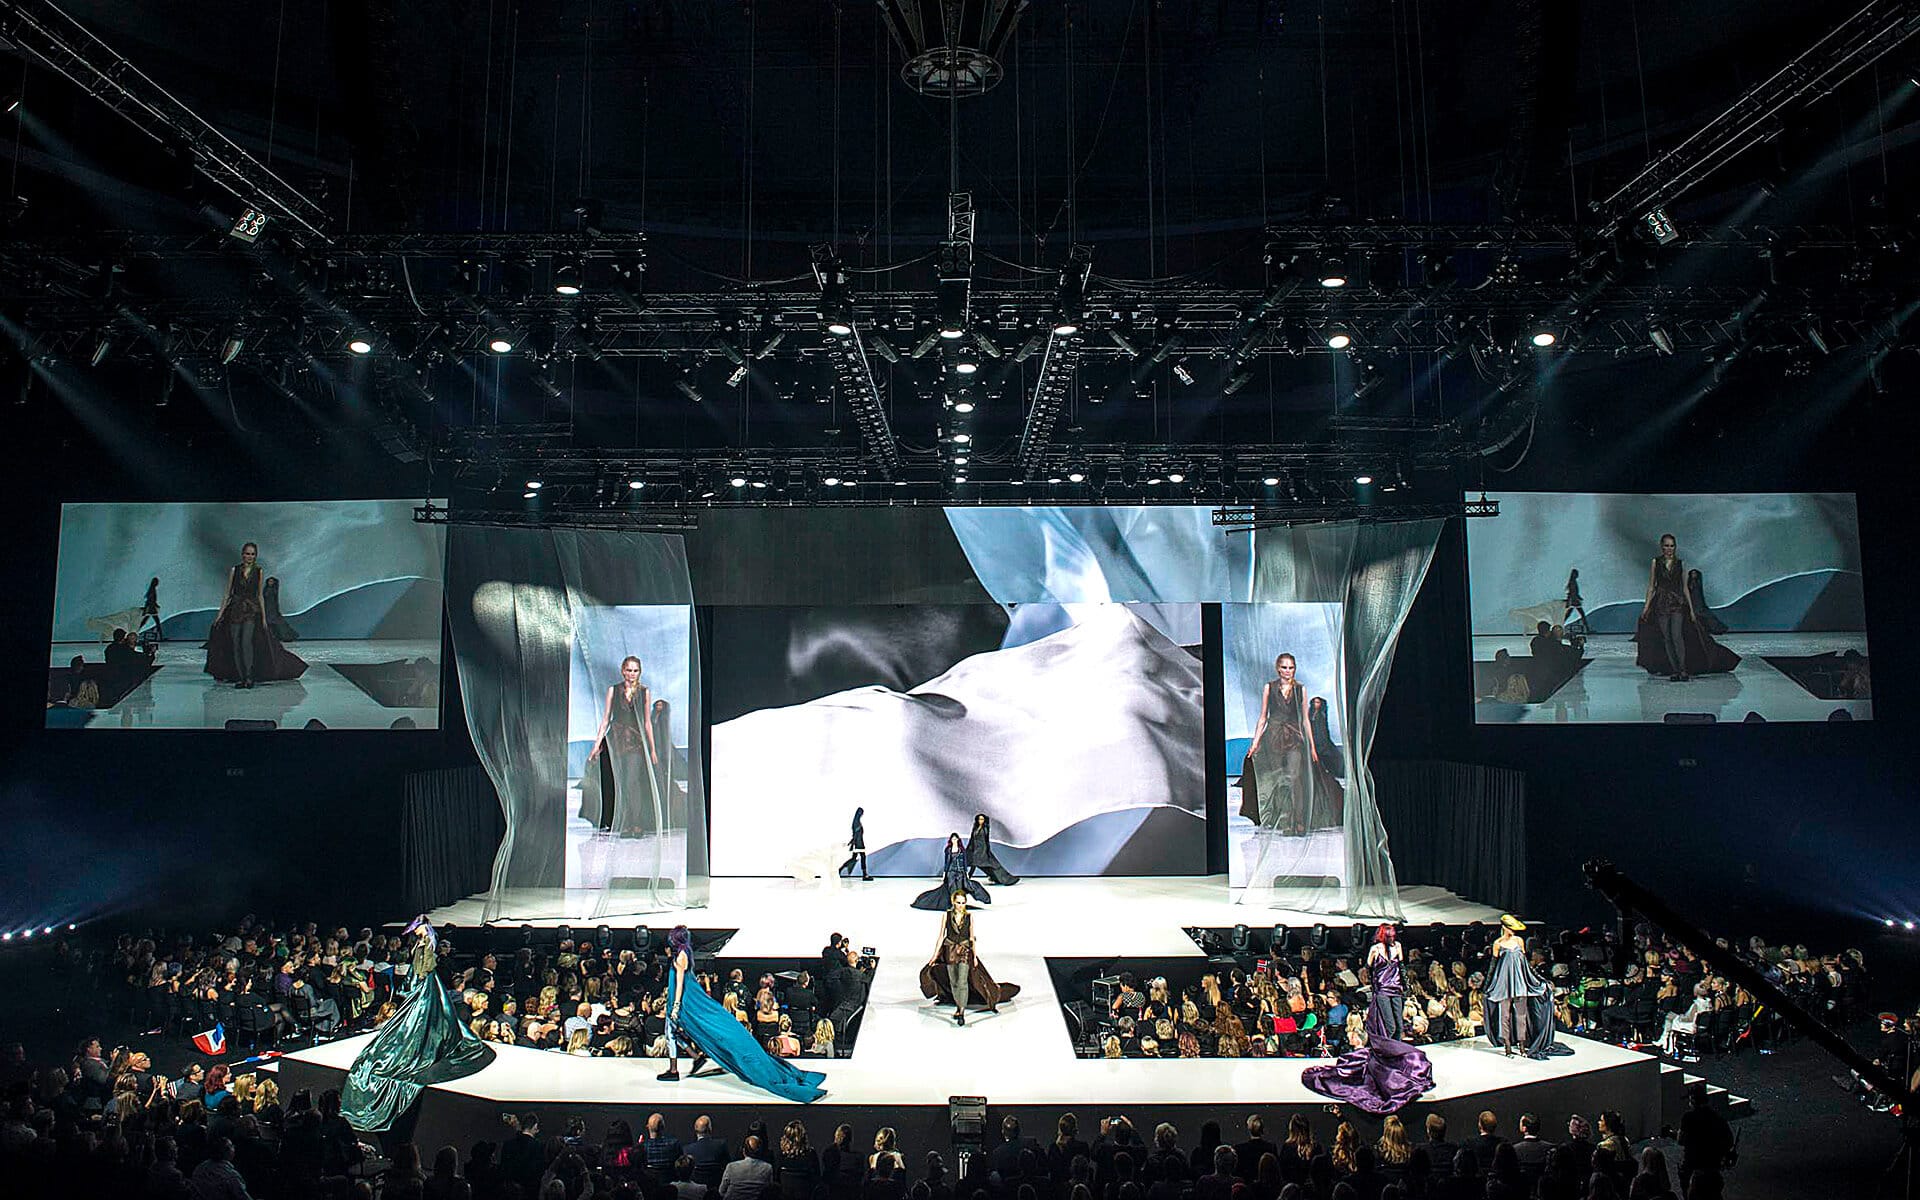 Modevisning på catwalk i Globen / Avicii Arena